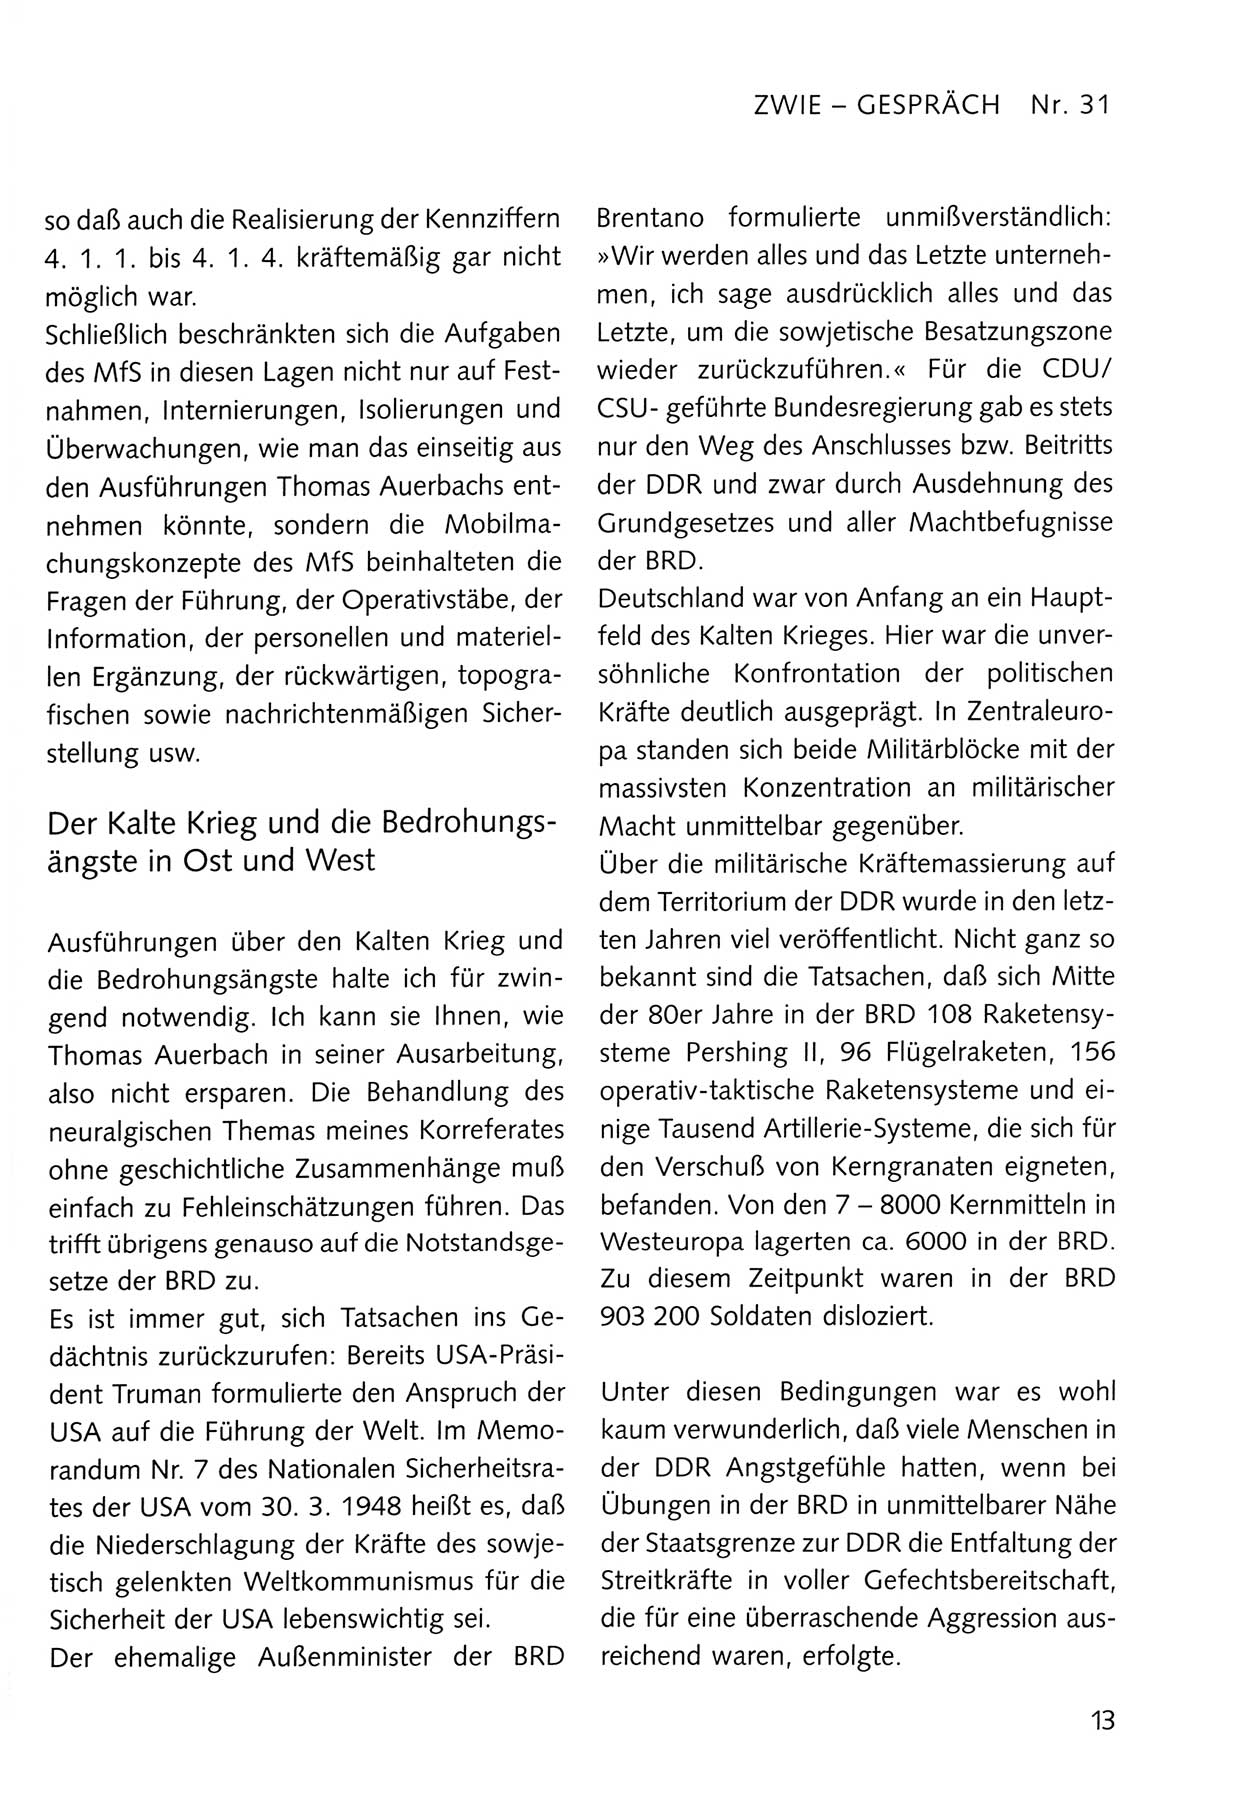 Zwie-Gespräch, Beiträge zum Umgang mit der Staatssicherheits-Vergangenheit [Deutsche Demokratische Republik (DDR)], Ausgabe Nr. 31, Berlin 1995, Seite 13 (Zwie-Gespr. Ausg. 31 1995, S. 13)